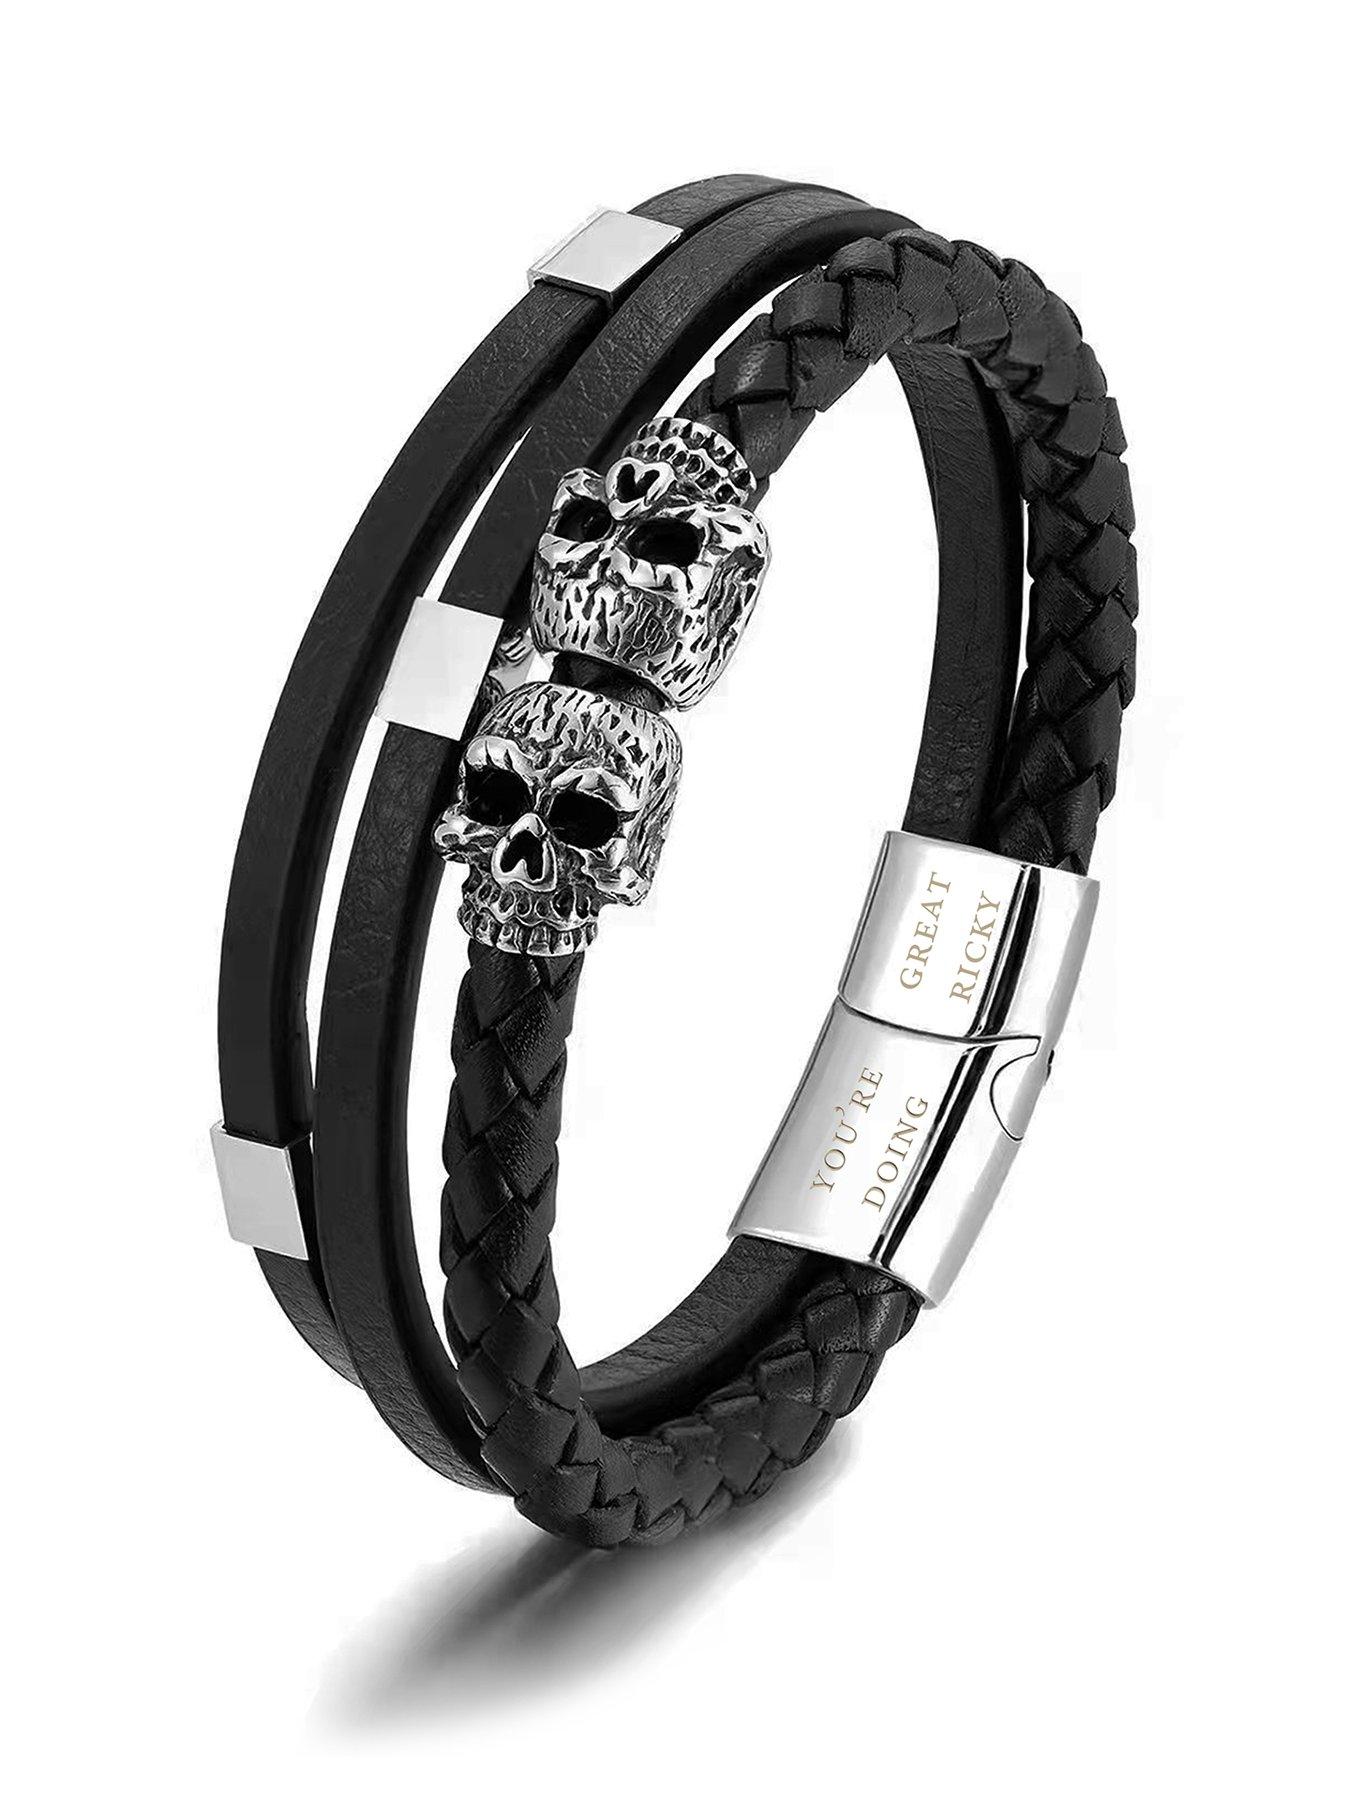 XIAQUJ Personalized 26 in itial Stone Bracelet Elastic Bracelet Letter Bracelet Charm Bracelet for Men Women Girls Bracelets G, Adult Unisex, Size